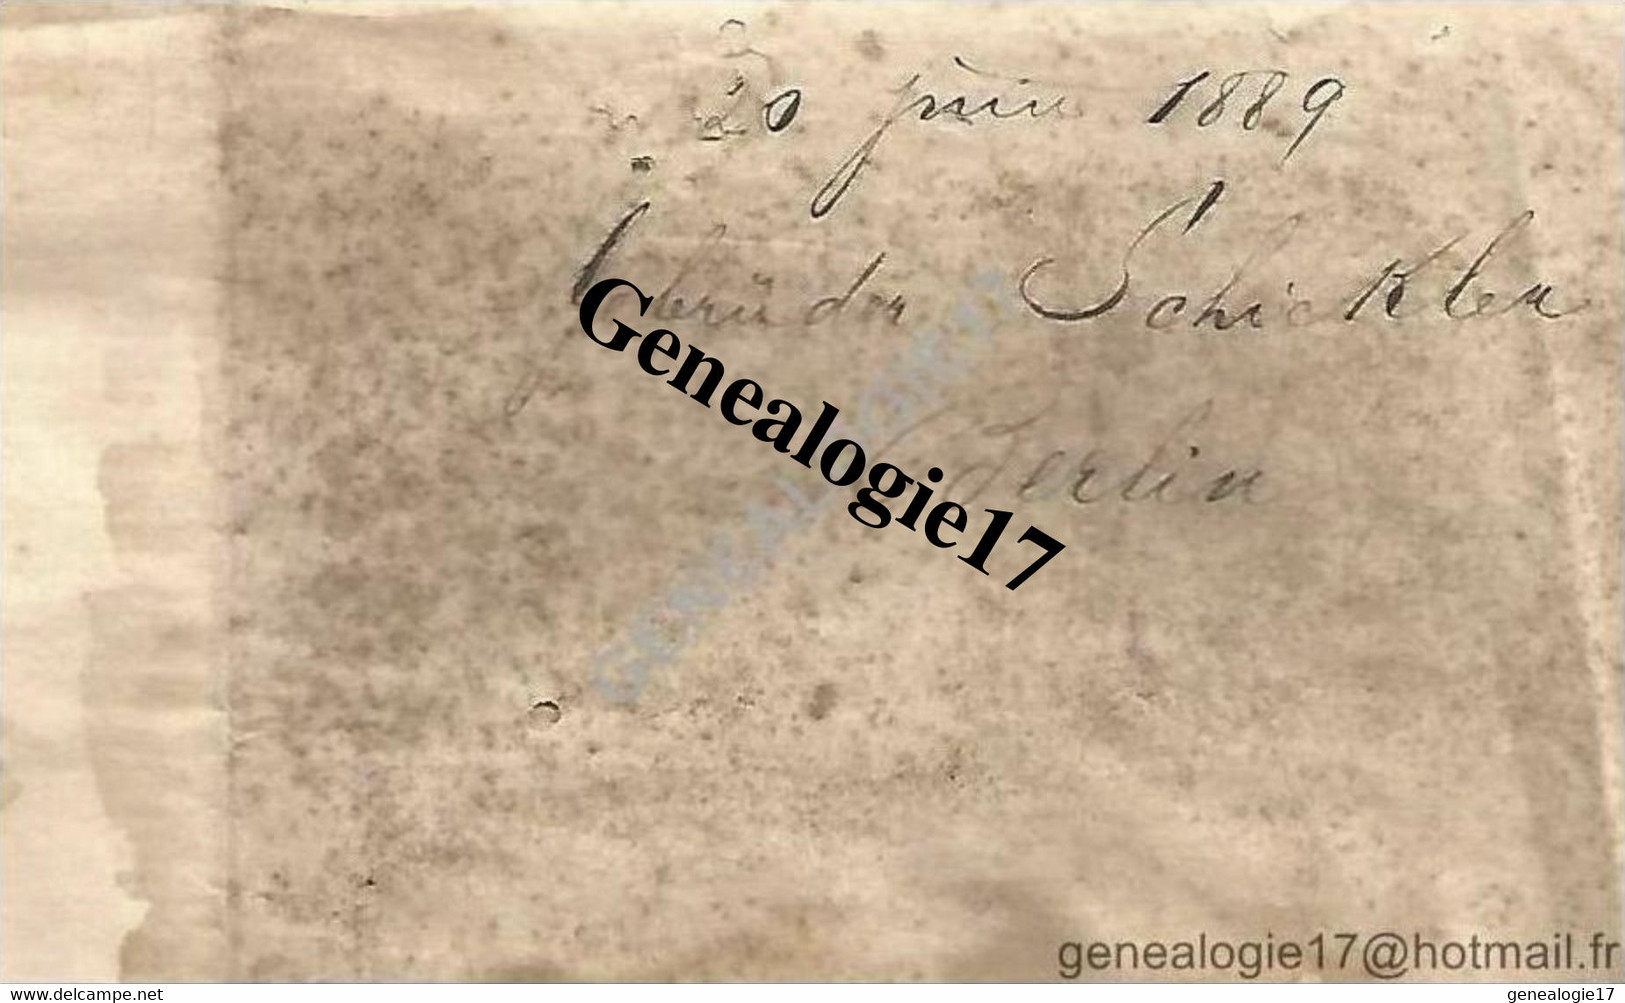 96 0998 ALLEMAGNE DEUTSCHLAND BERLIN 1889 Lettre De Mr GEBRUDER SCHICKLER - 1800 – 1899